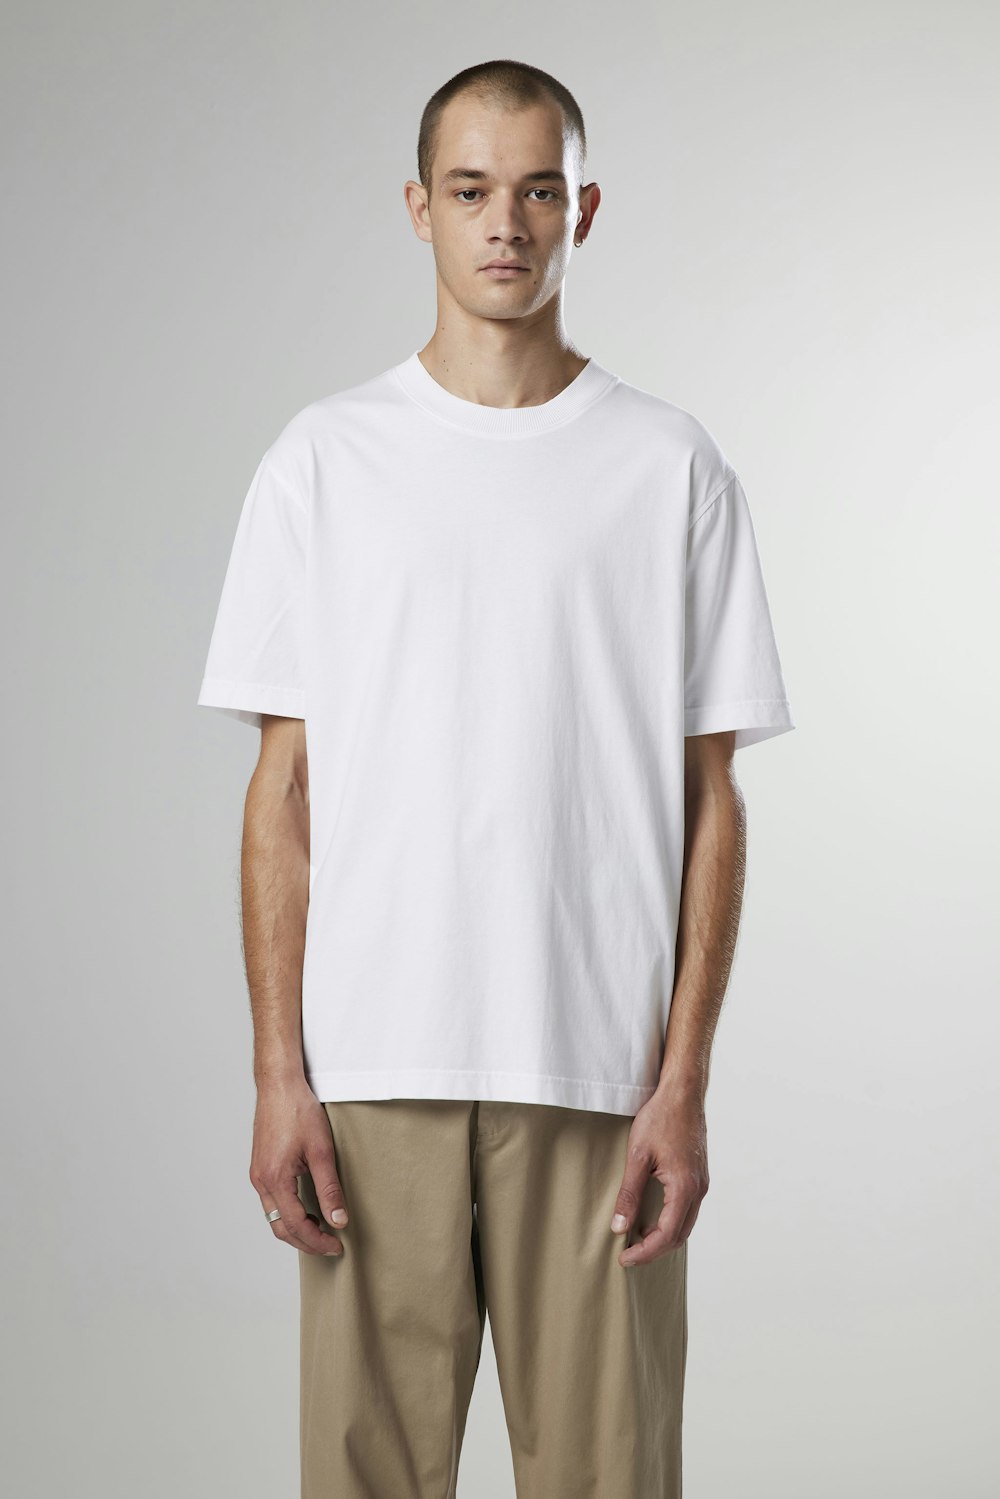 Adam 3209 men's t-shirt - White - Buy online at NN07®